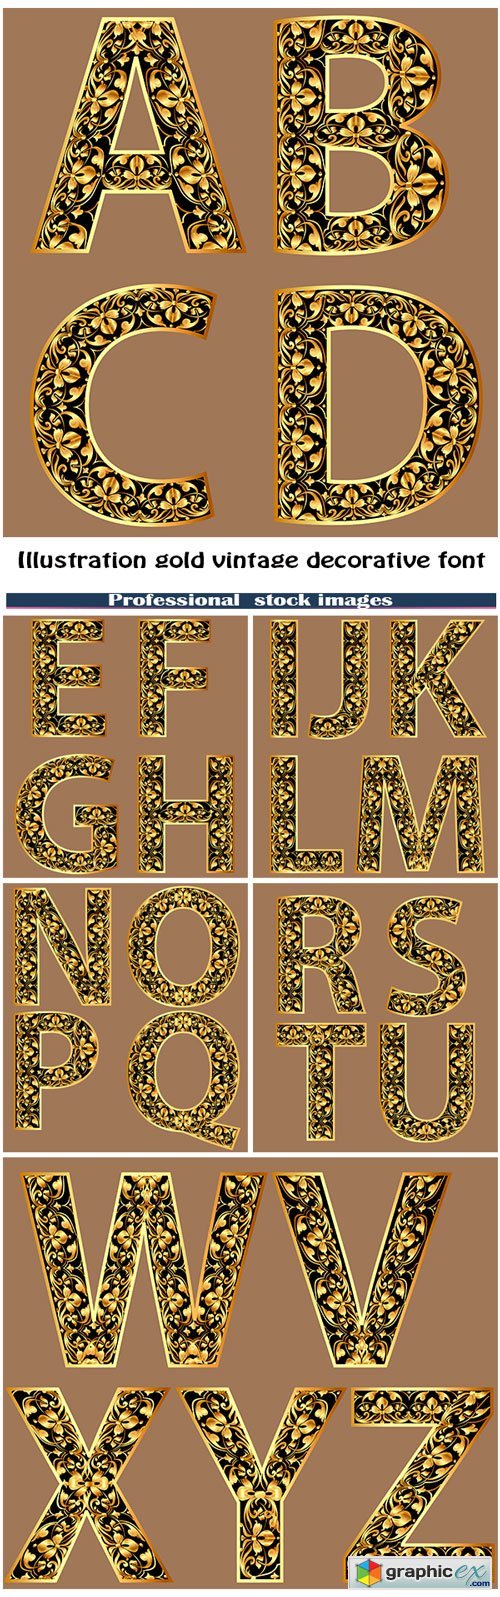 Illustration gold vintage decorative font